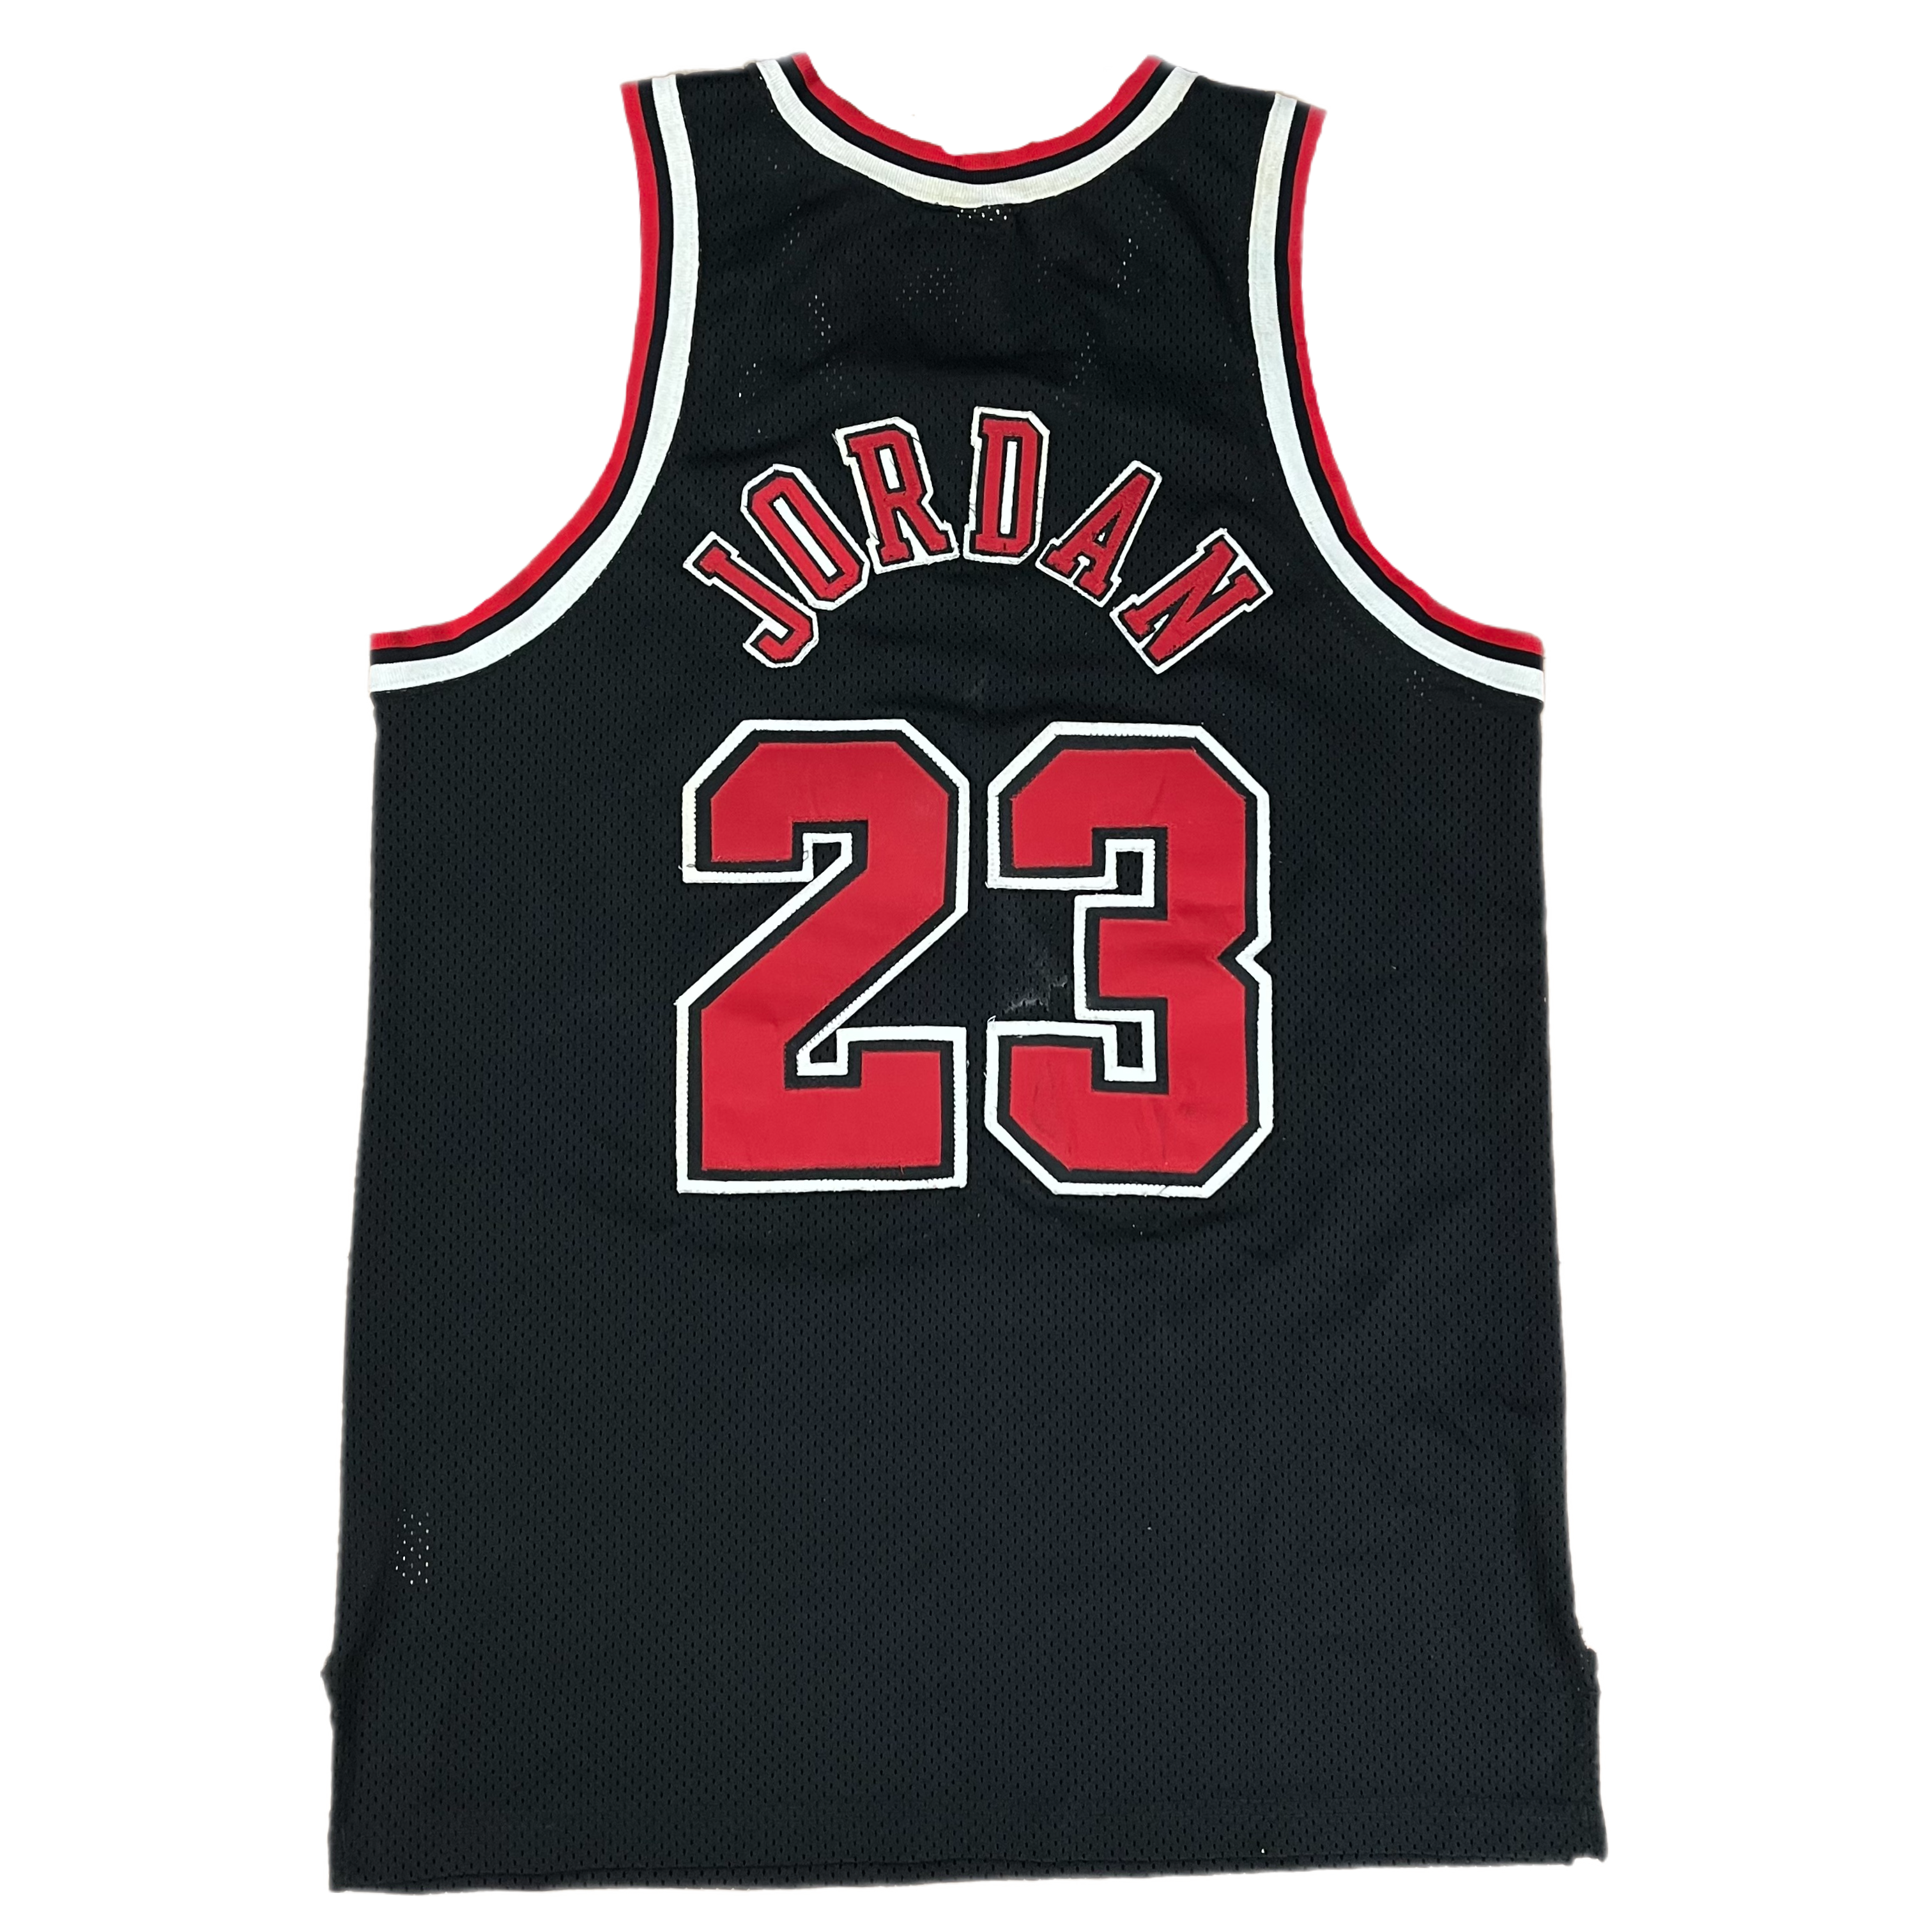 Men's Chicago Bulls #23 Michael Jordan Cream Tunisia